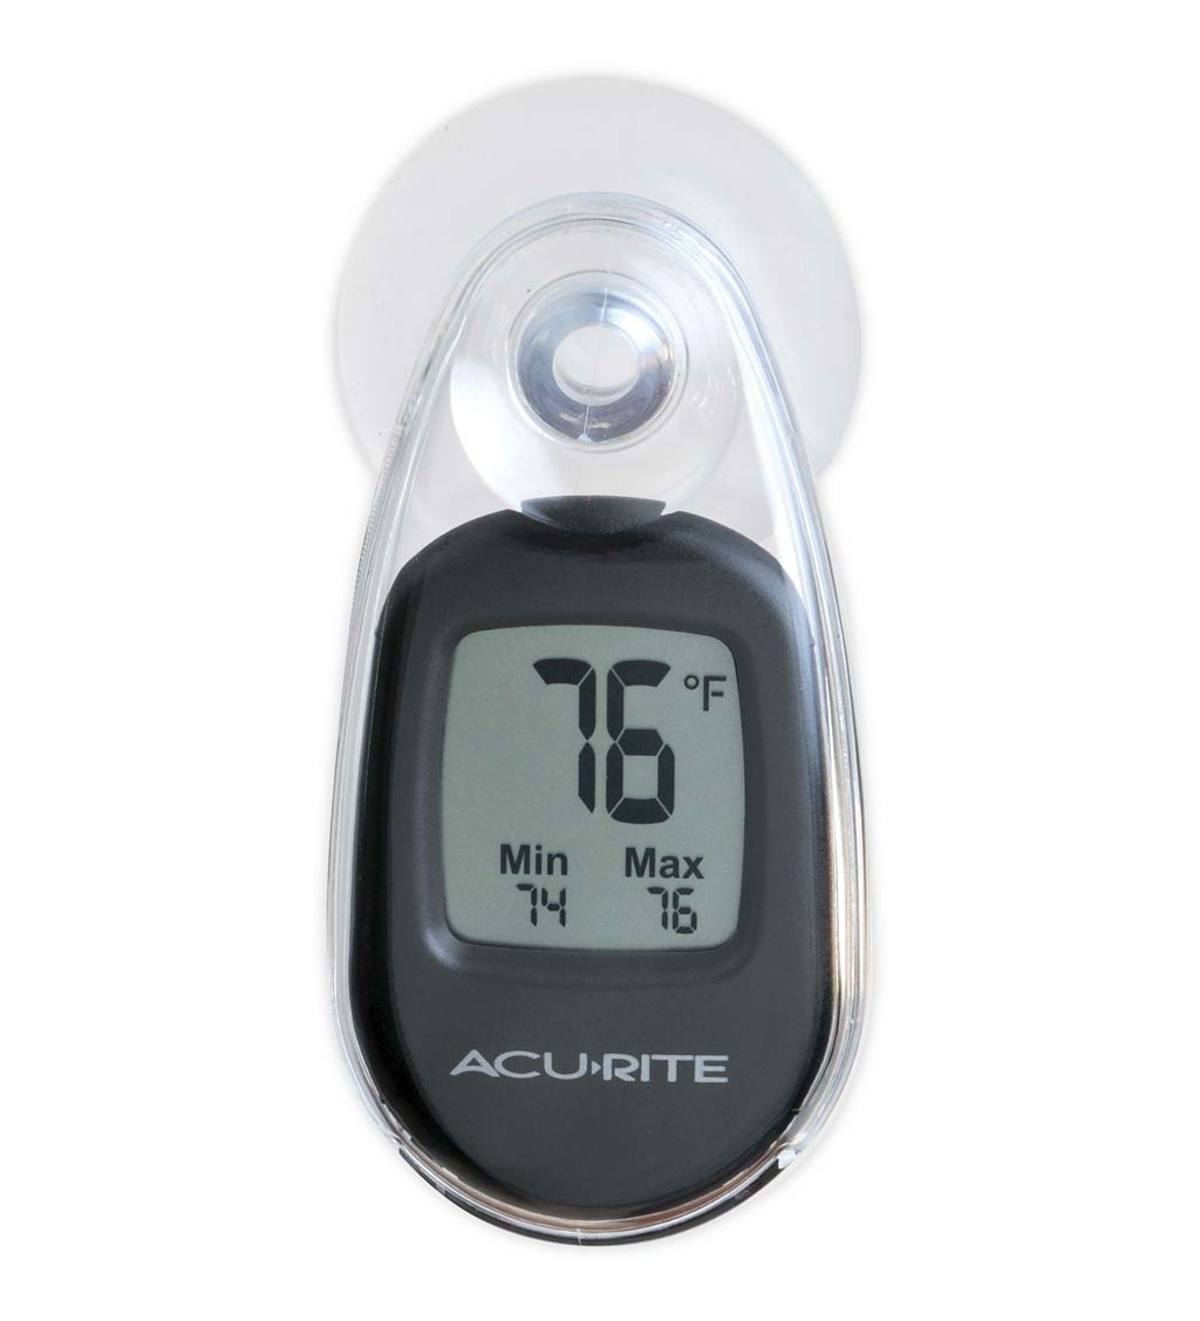 Indoor-Outdoor Digital Thermometer